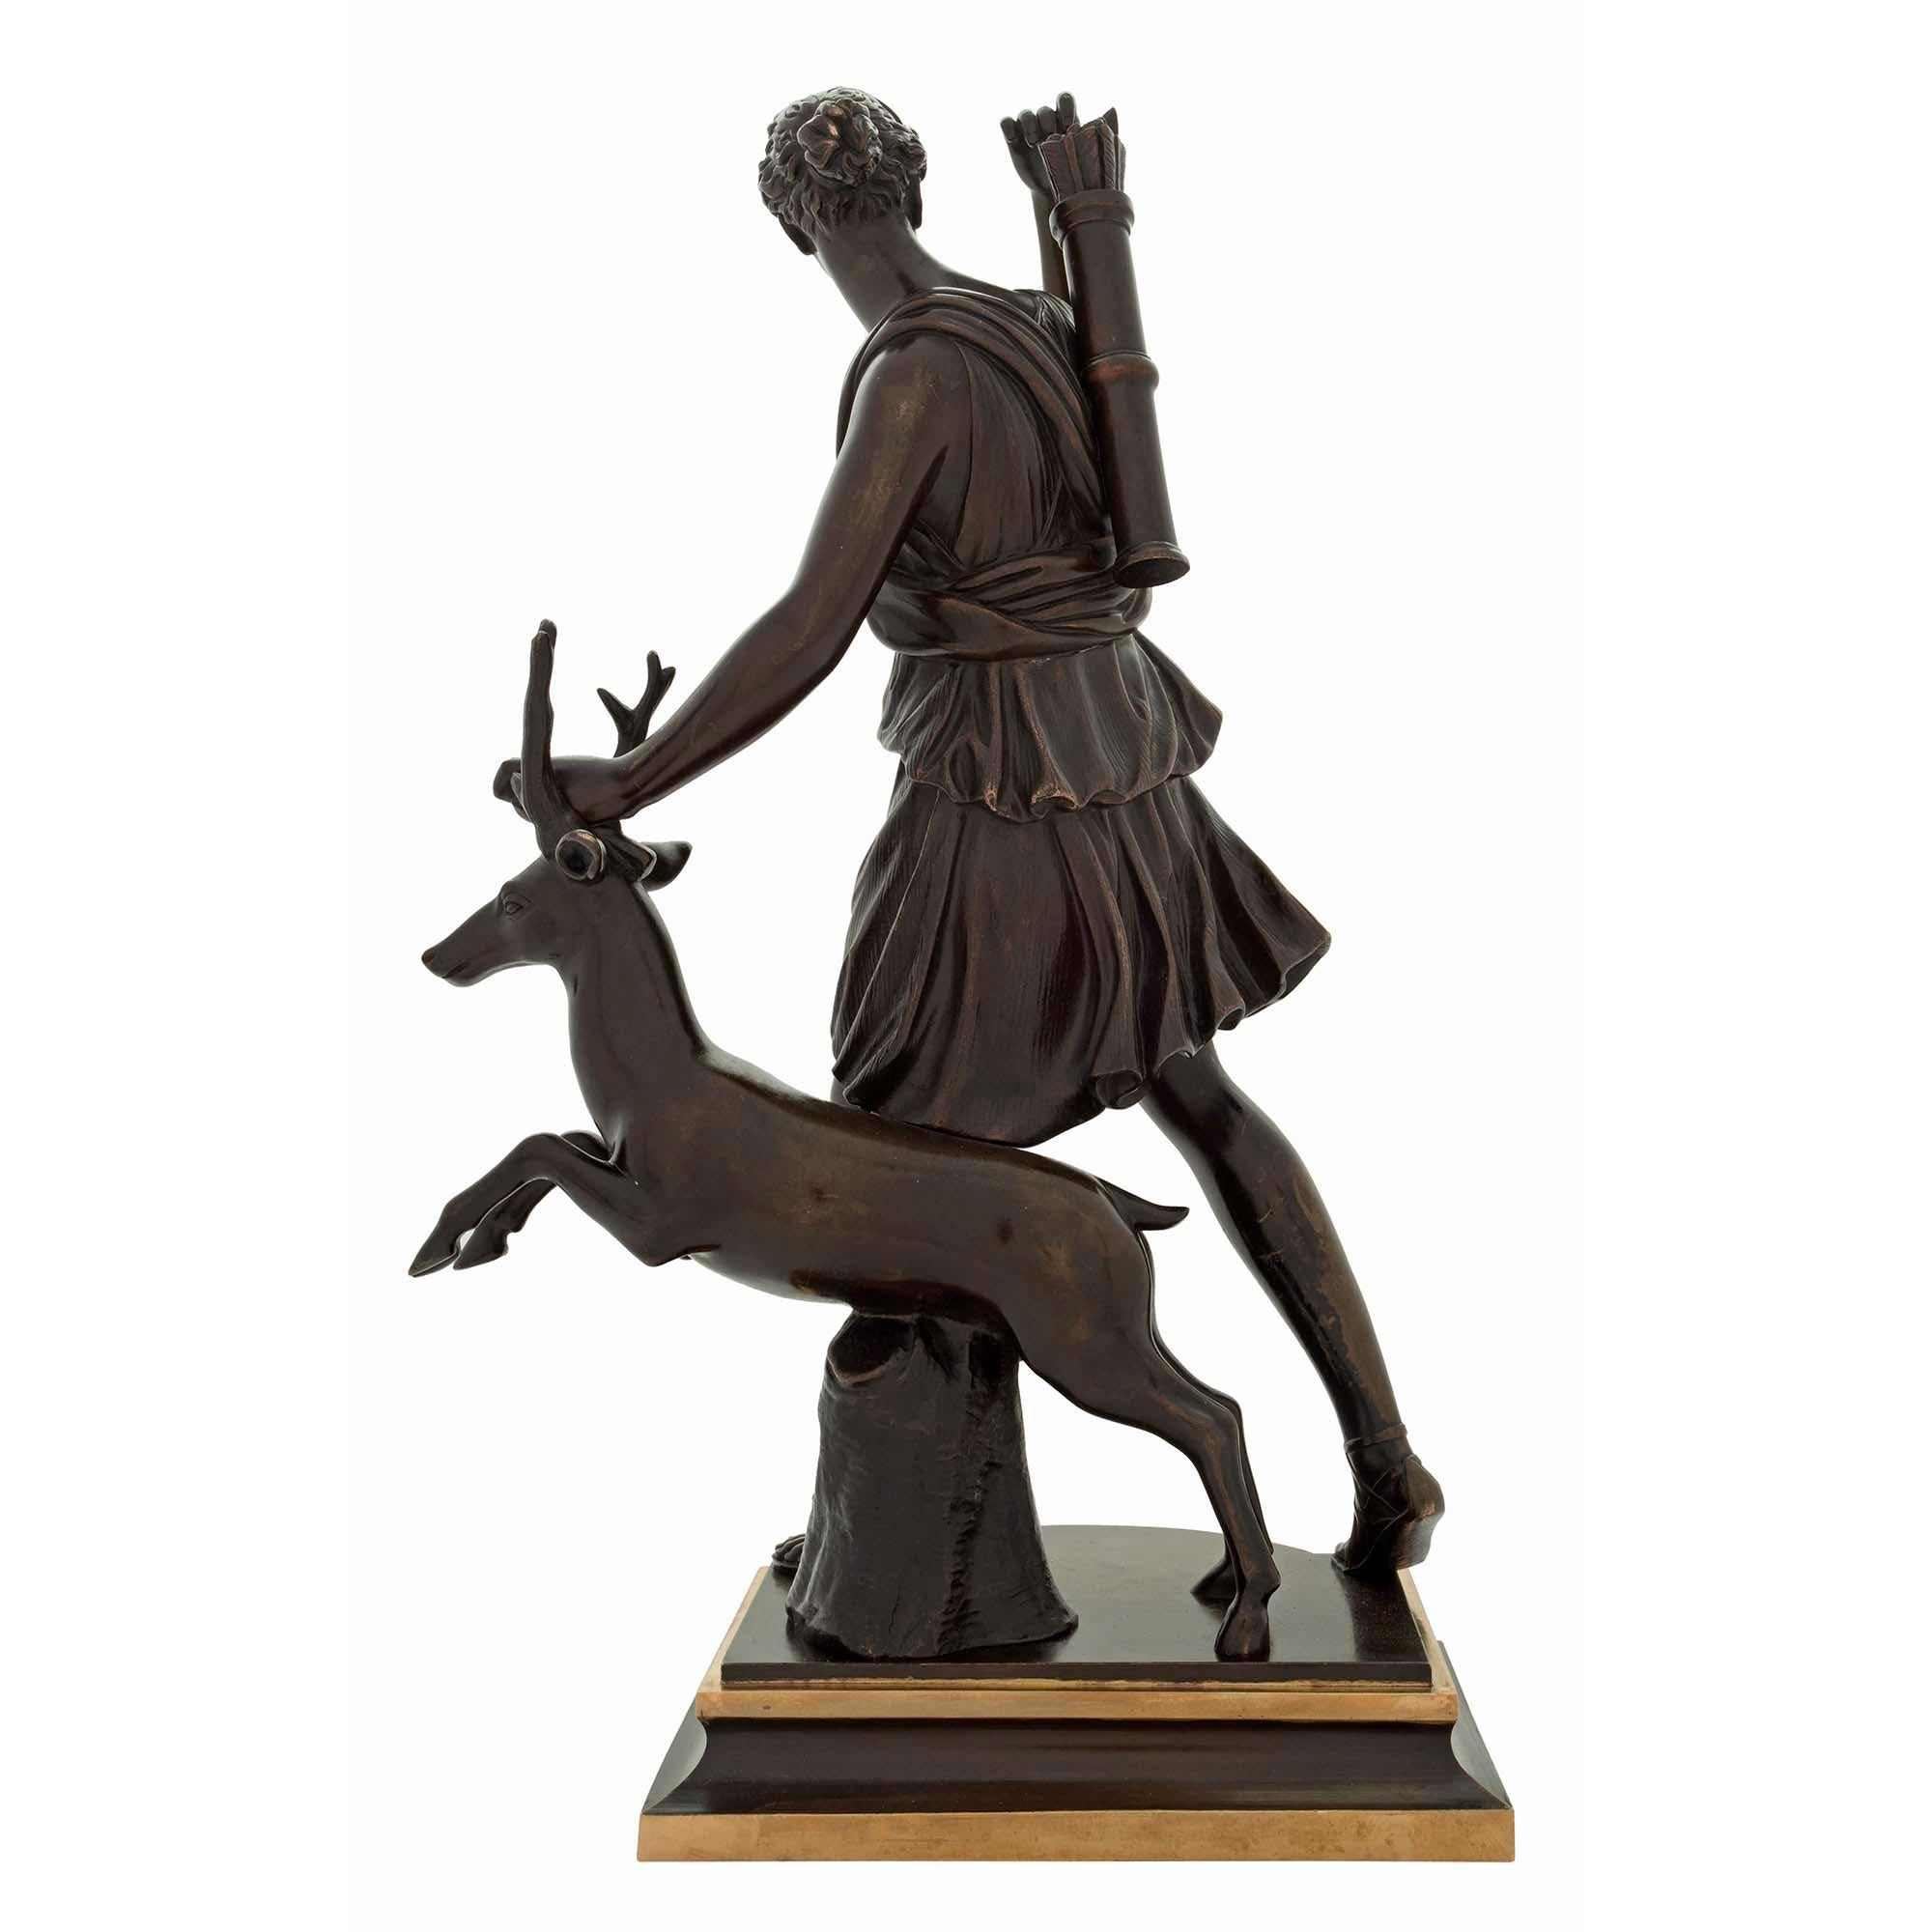 Très belle statue française du XIXe siècle en bronze patiné et bronze doré représentant Diane la chasseresse, signée Susse Frères. La statue est surélevée par une base rectangulaire mouchetée à la façade concave et aux bandes décoratives en bronze